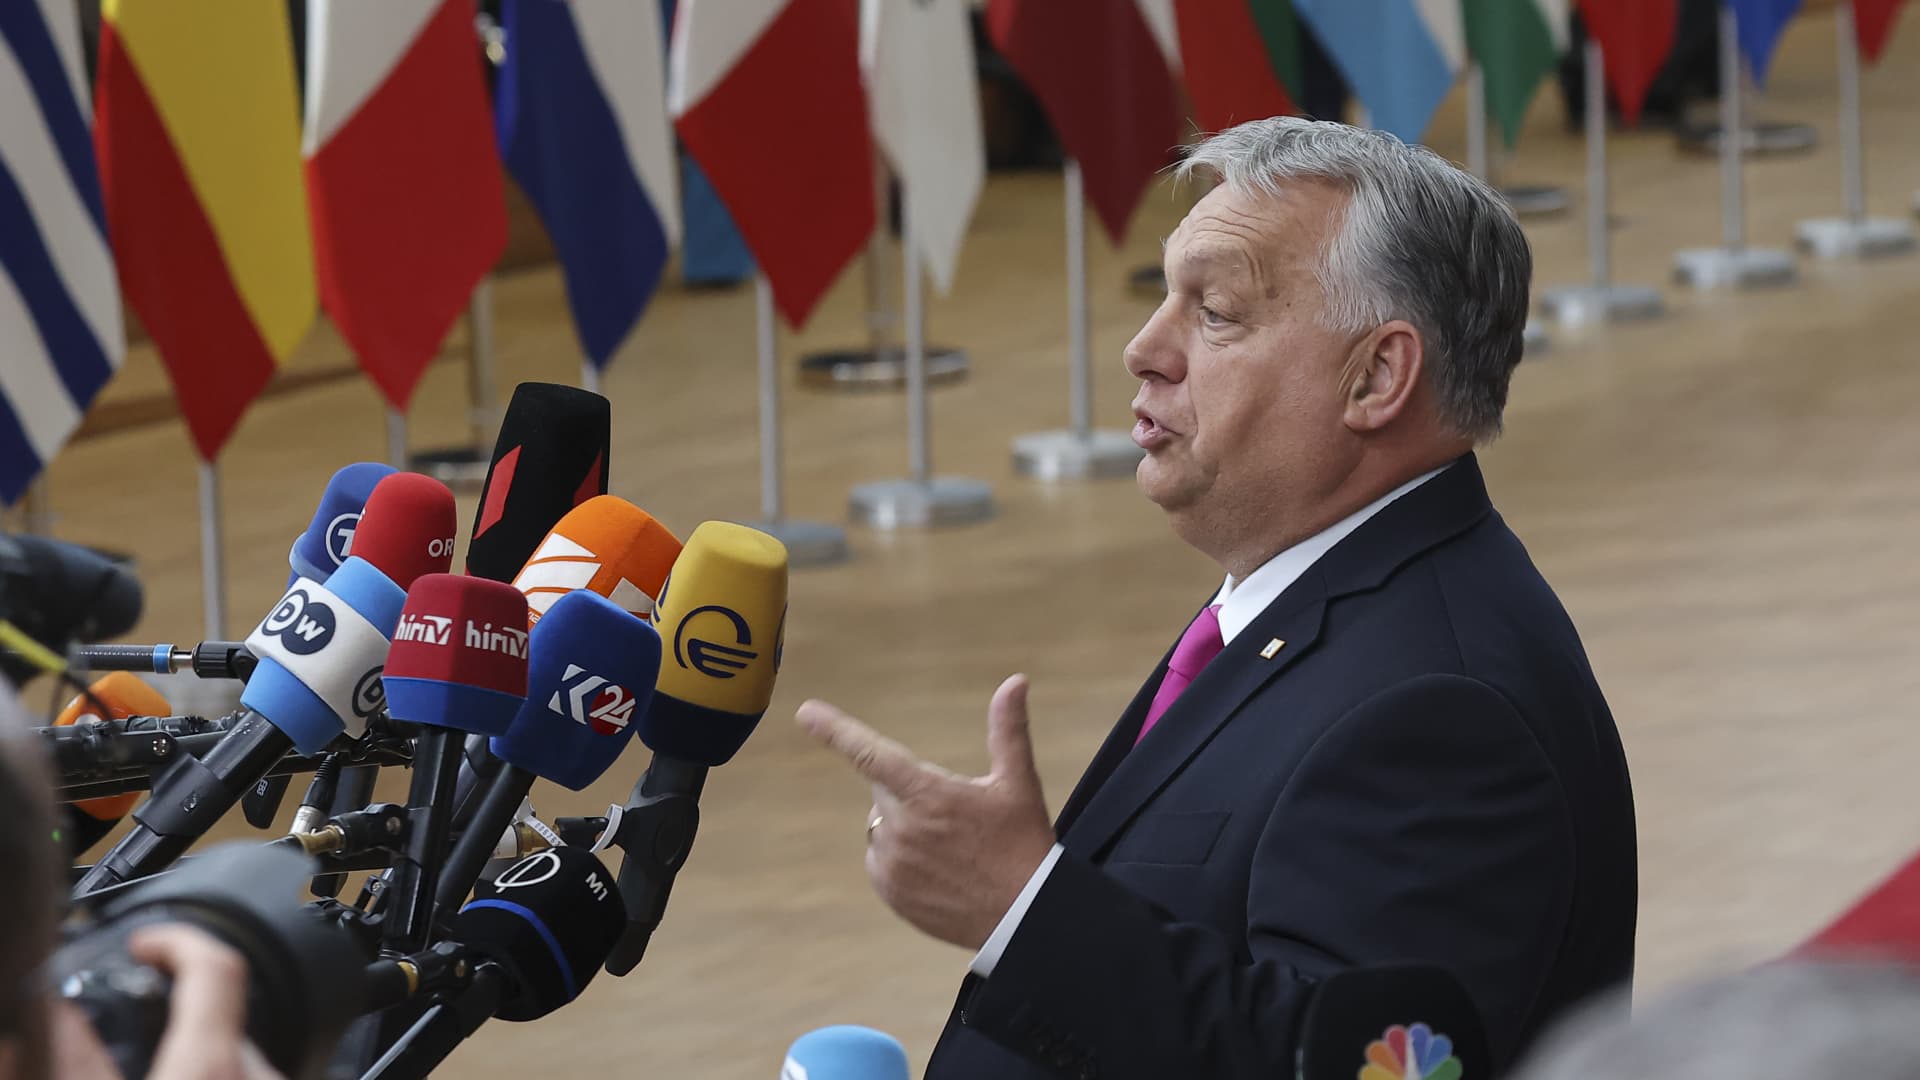 Прем'єр-міністр Угорщини Віктор Орбан прибув на Європейську раду, зустріч лідерів ЄС у штаб-квартирі ЄС.